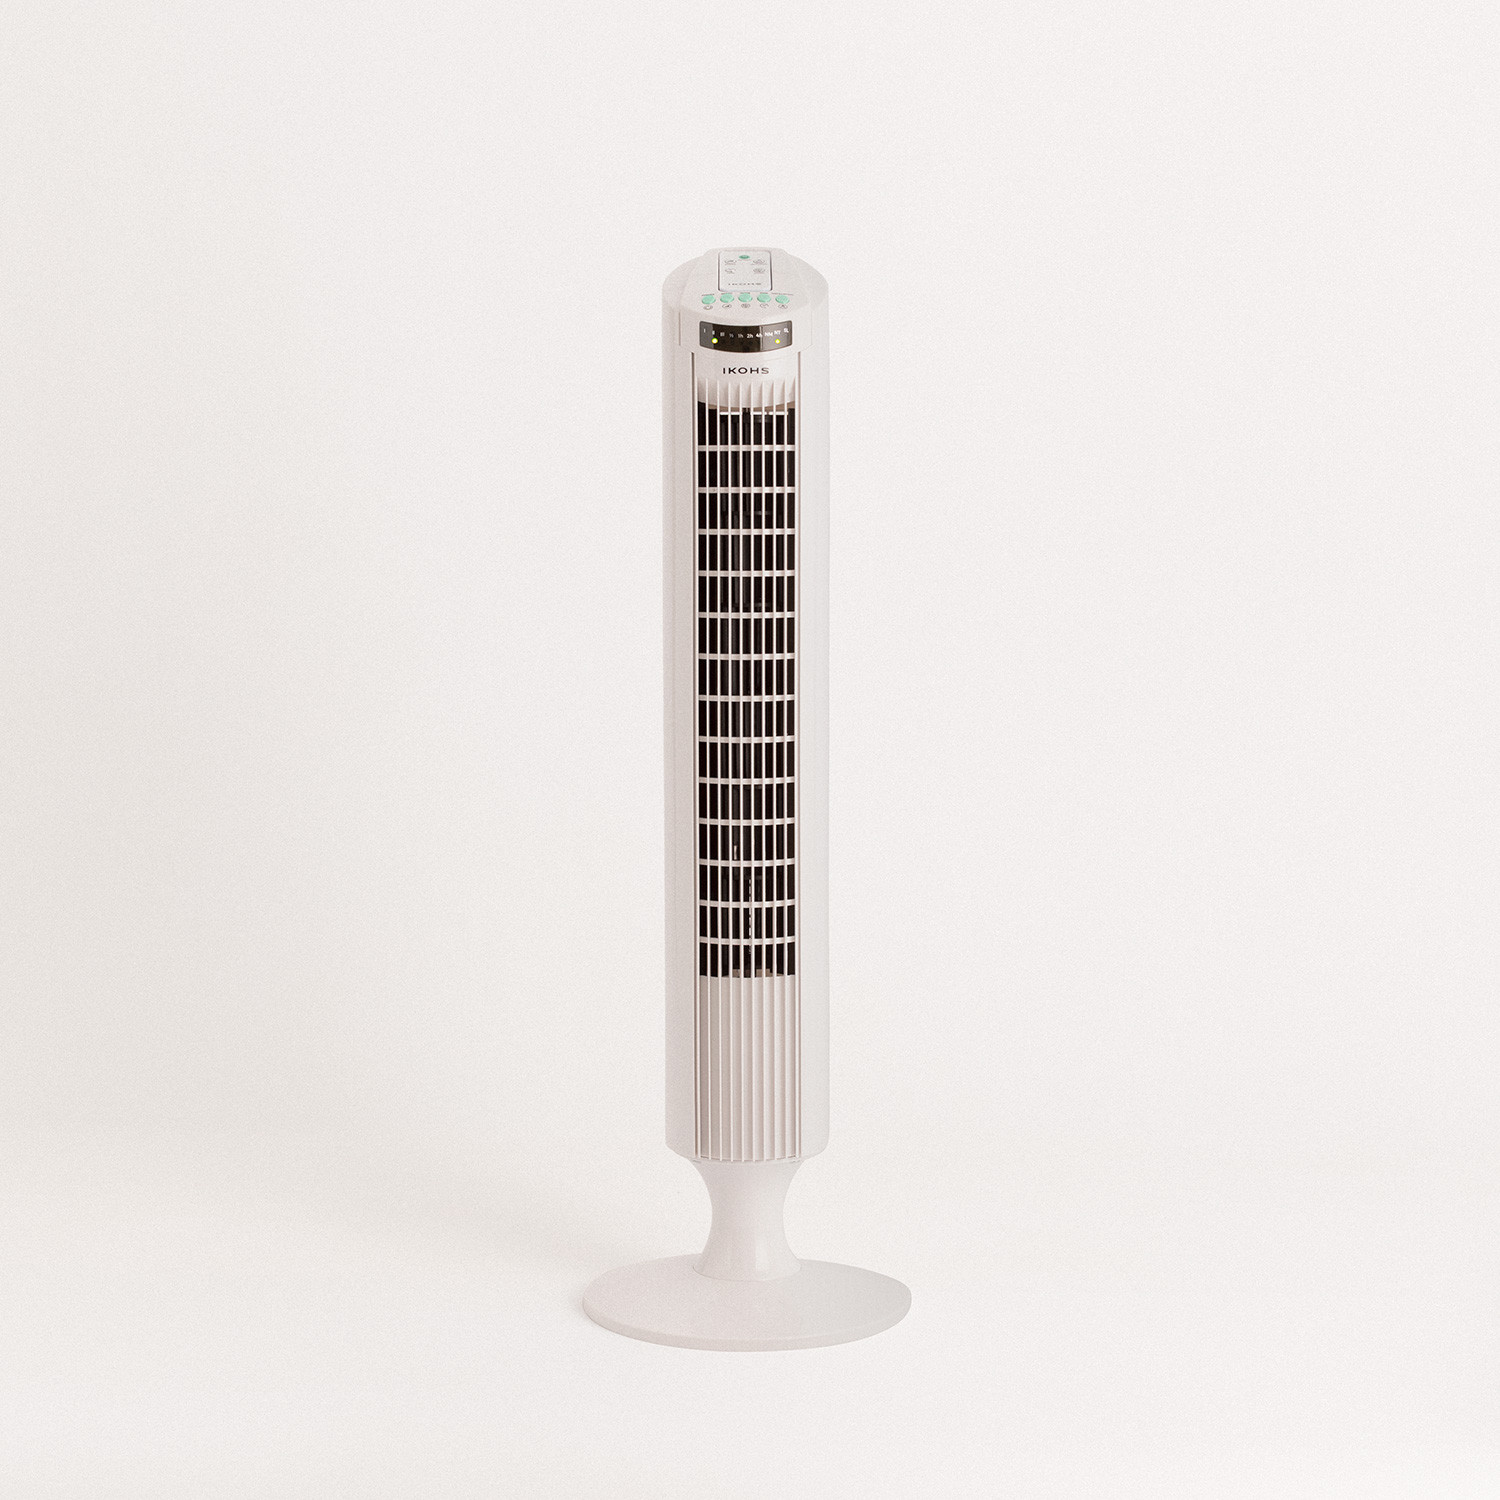 EMPIREWIND RC - Ultrasilent Tower Fan with Remote Control, imagen de galería 1